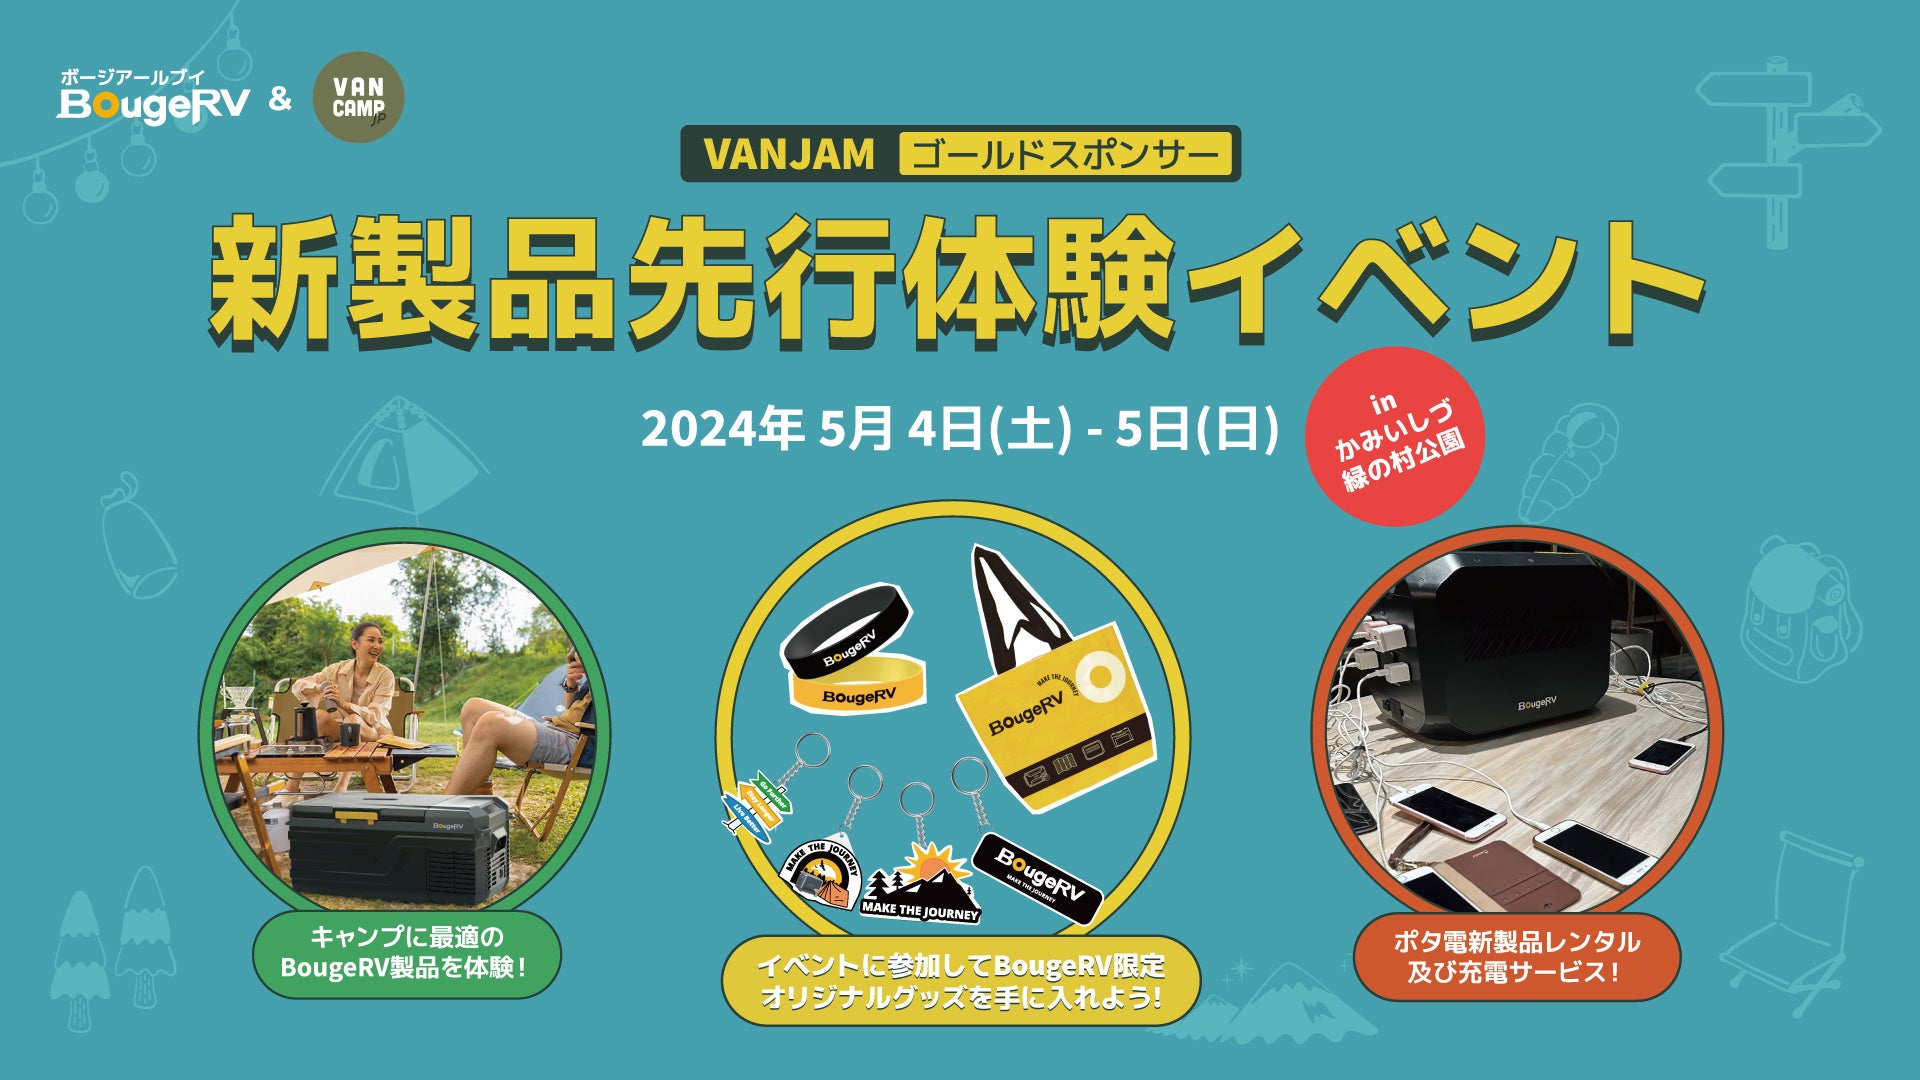 アウトドアブランド・BougeRVがVANCAMP JAPAN主催のイベント「VANJAM」に出展！